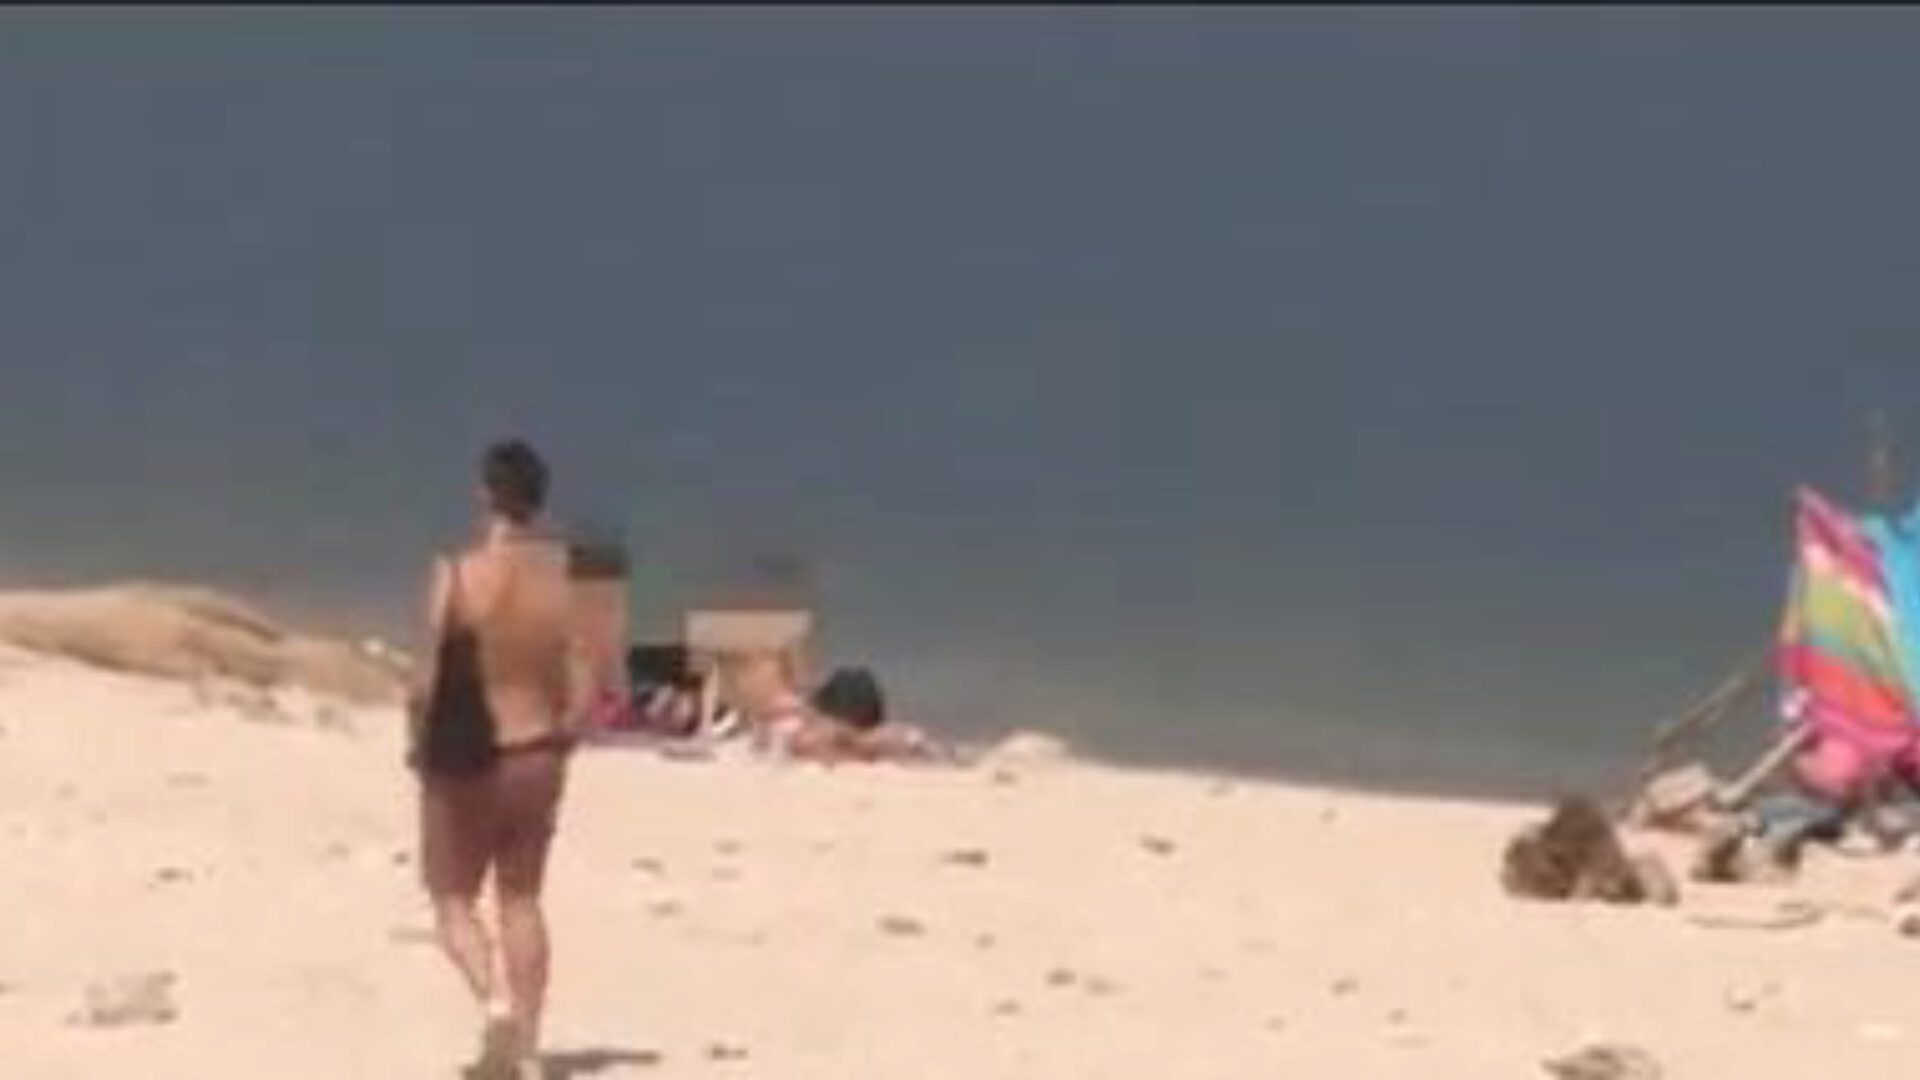 незнакомец падает на большой шомпол джотэда на нудистском пляже джотад доказывает нам, как этот парень может подобрать любого ангела, и он делает это, просто выйдя раздетым в лес